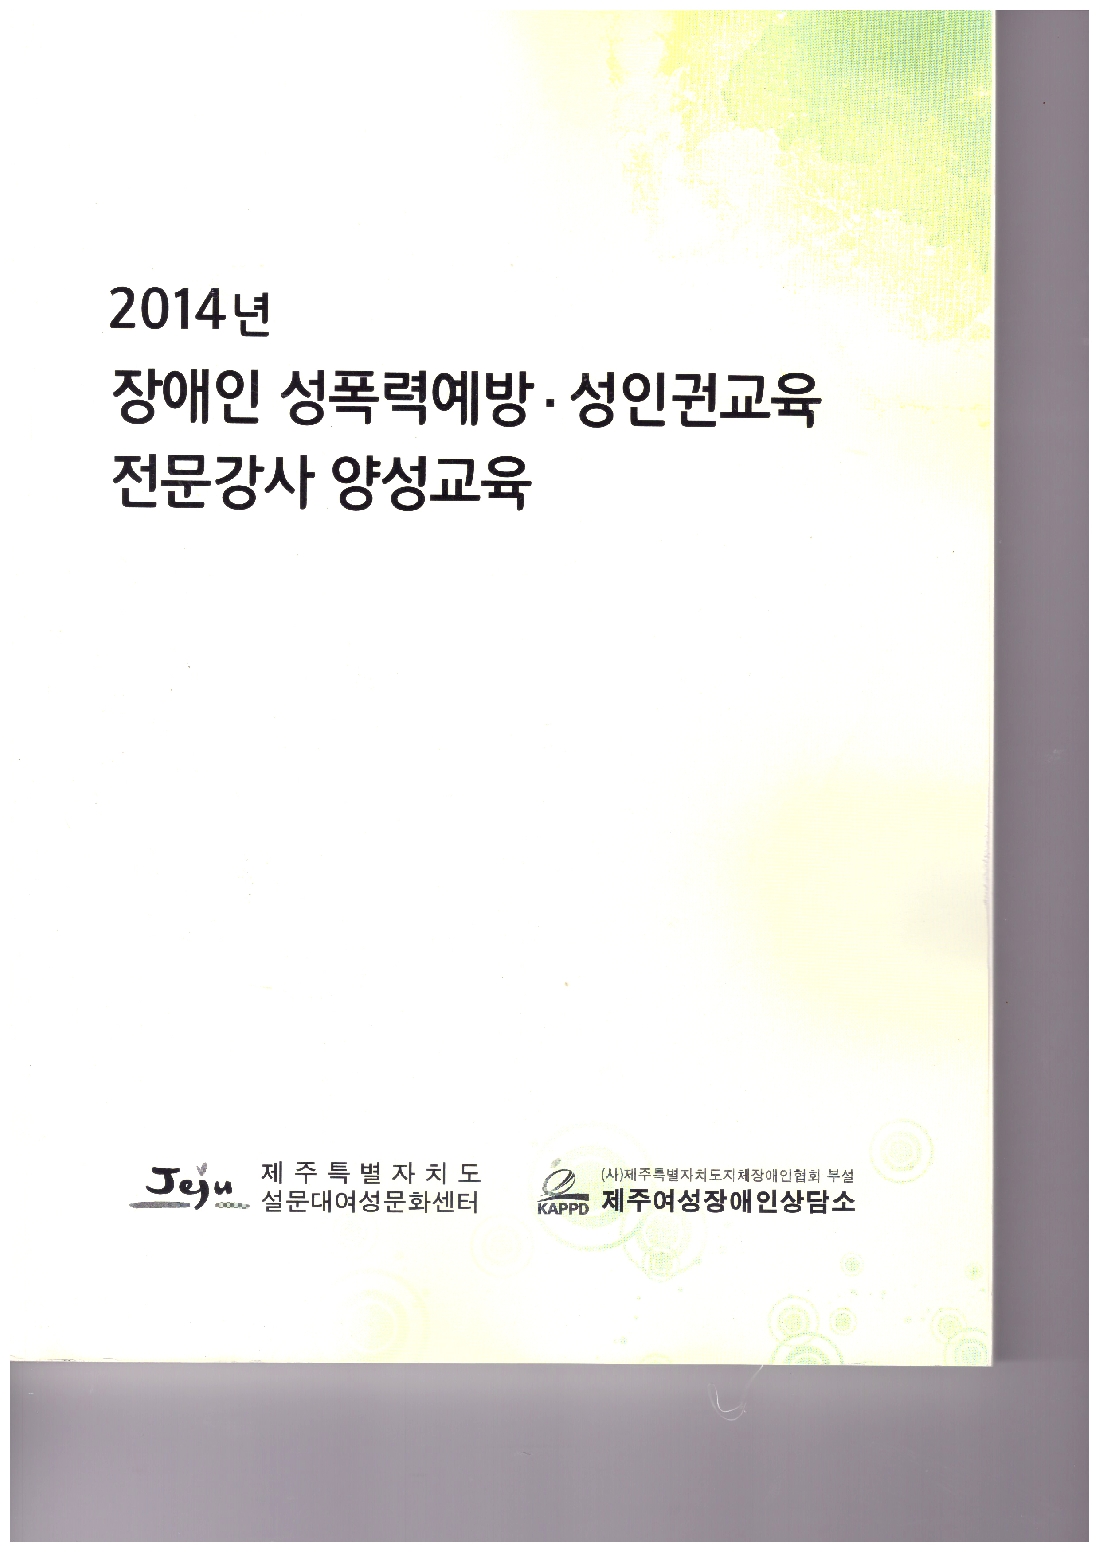 2014 장애인 성폭력 예방 성인권교육 전문강사 양성과정